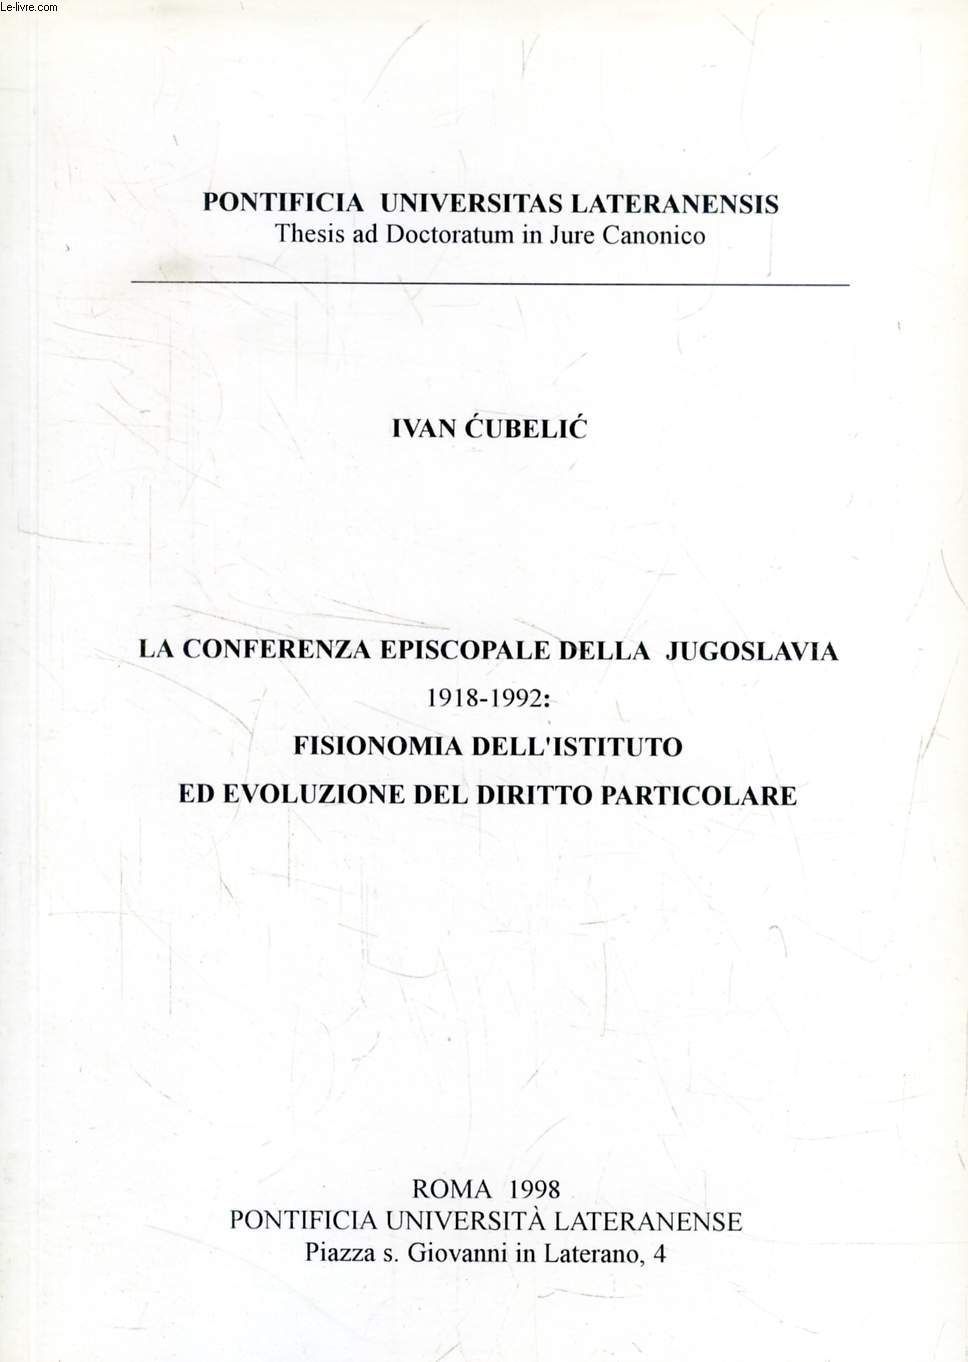 LA CONFERENZA EPISCOPALE DELLA JUGOSLAVIA, 1918-1992: FISIONOMIA DELL'ISTITUTO ED EVOLUZIONE DEL DIRITTO PARTICOLARE (TESI)